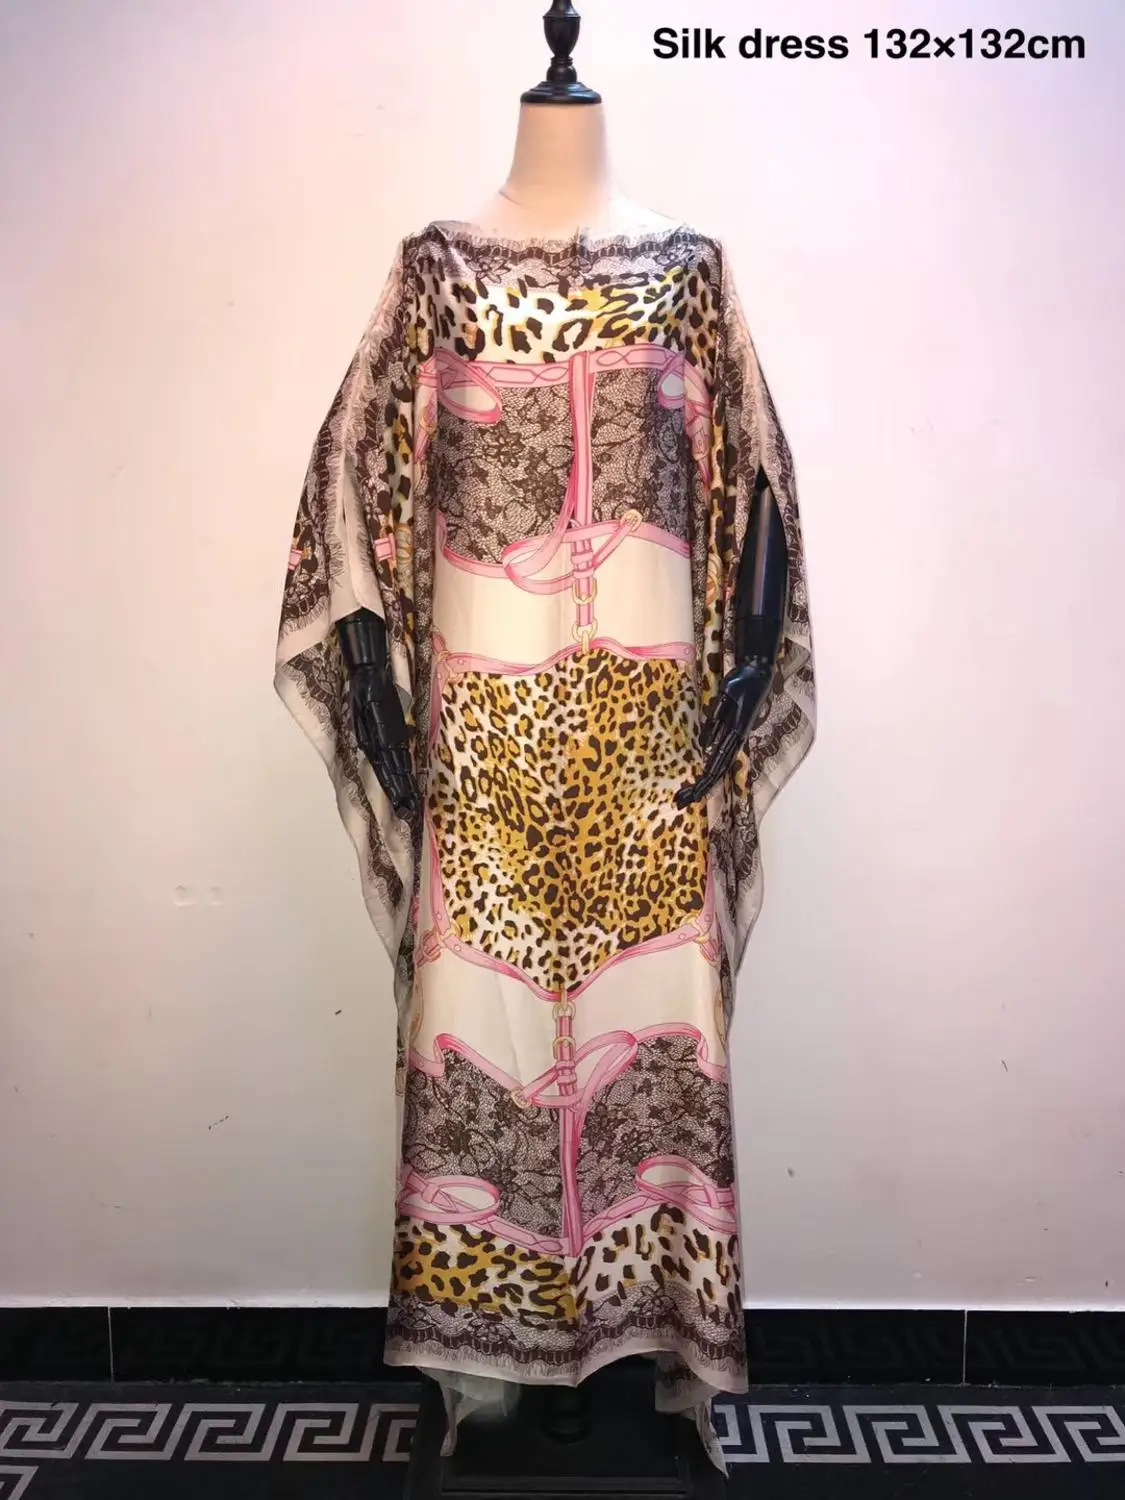 Unikke Europæiske Trykt italienske Kaftan Silke Kjoler Plus size Dashiki Elegant aften, fest kjoler Afrikanske kjoler til kvinder